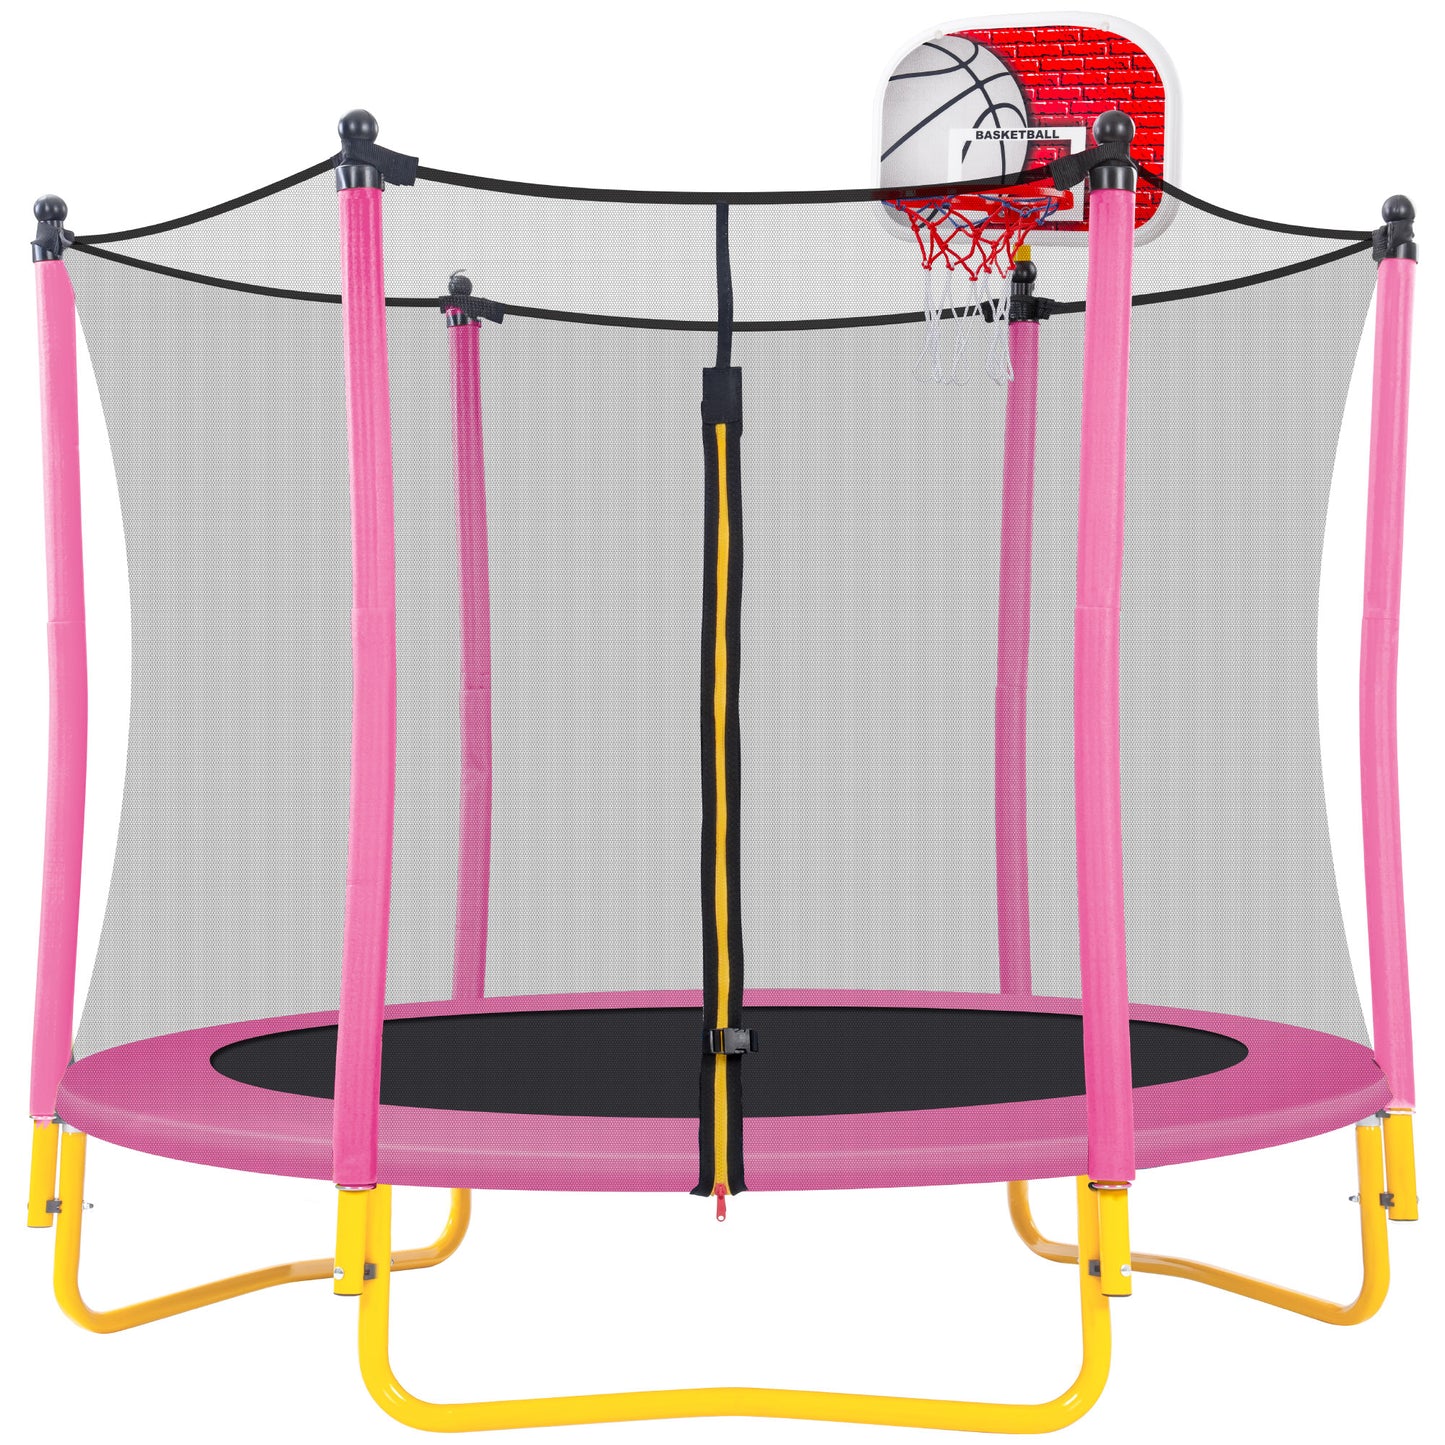 5,5-Fuß-Trampolin für Kinder – 65-Zoll-Mini-Kleinkindtrampolin für den Außenbereich und den Innenbereich mit Gehäuse, Basketballkorb und Ball im Lieferumfang enthalten